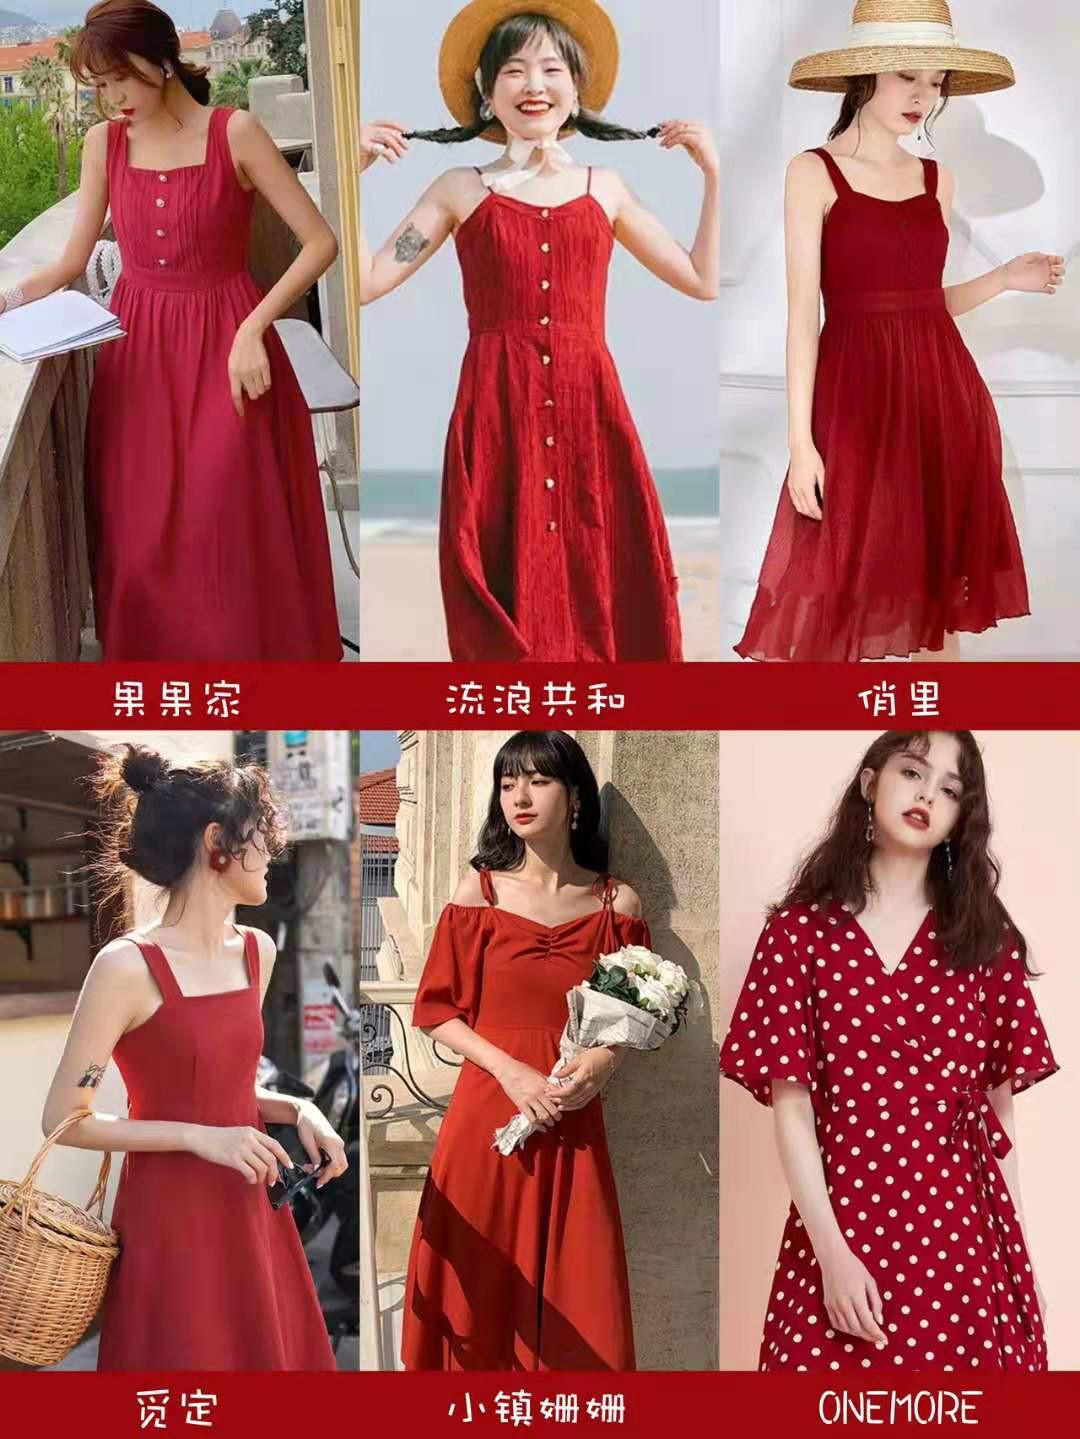 大红裙子、滚圆的肩膀歌女[12P]|魅力街拍 - 武当休闲山庄 - 稳定,和谐,人性化的中文社区